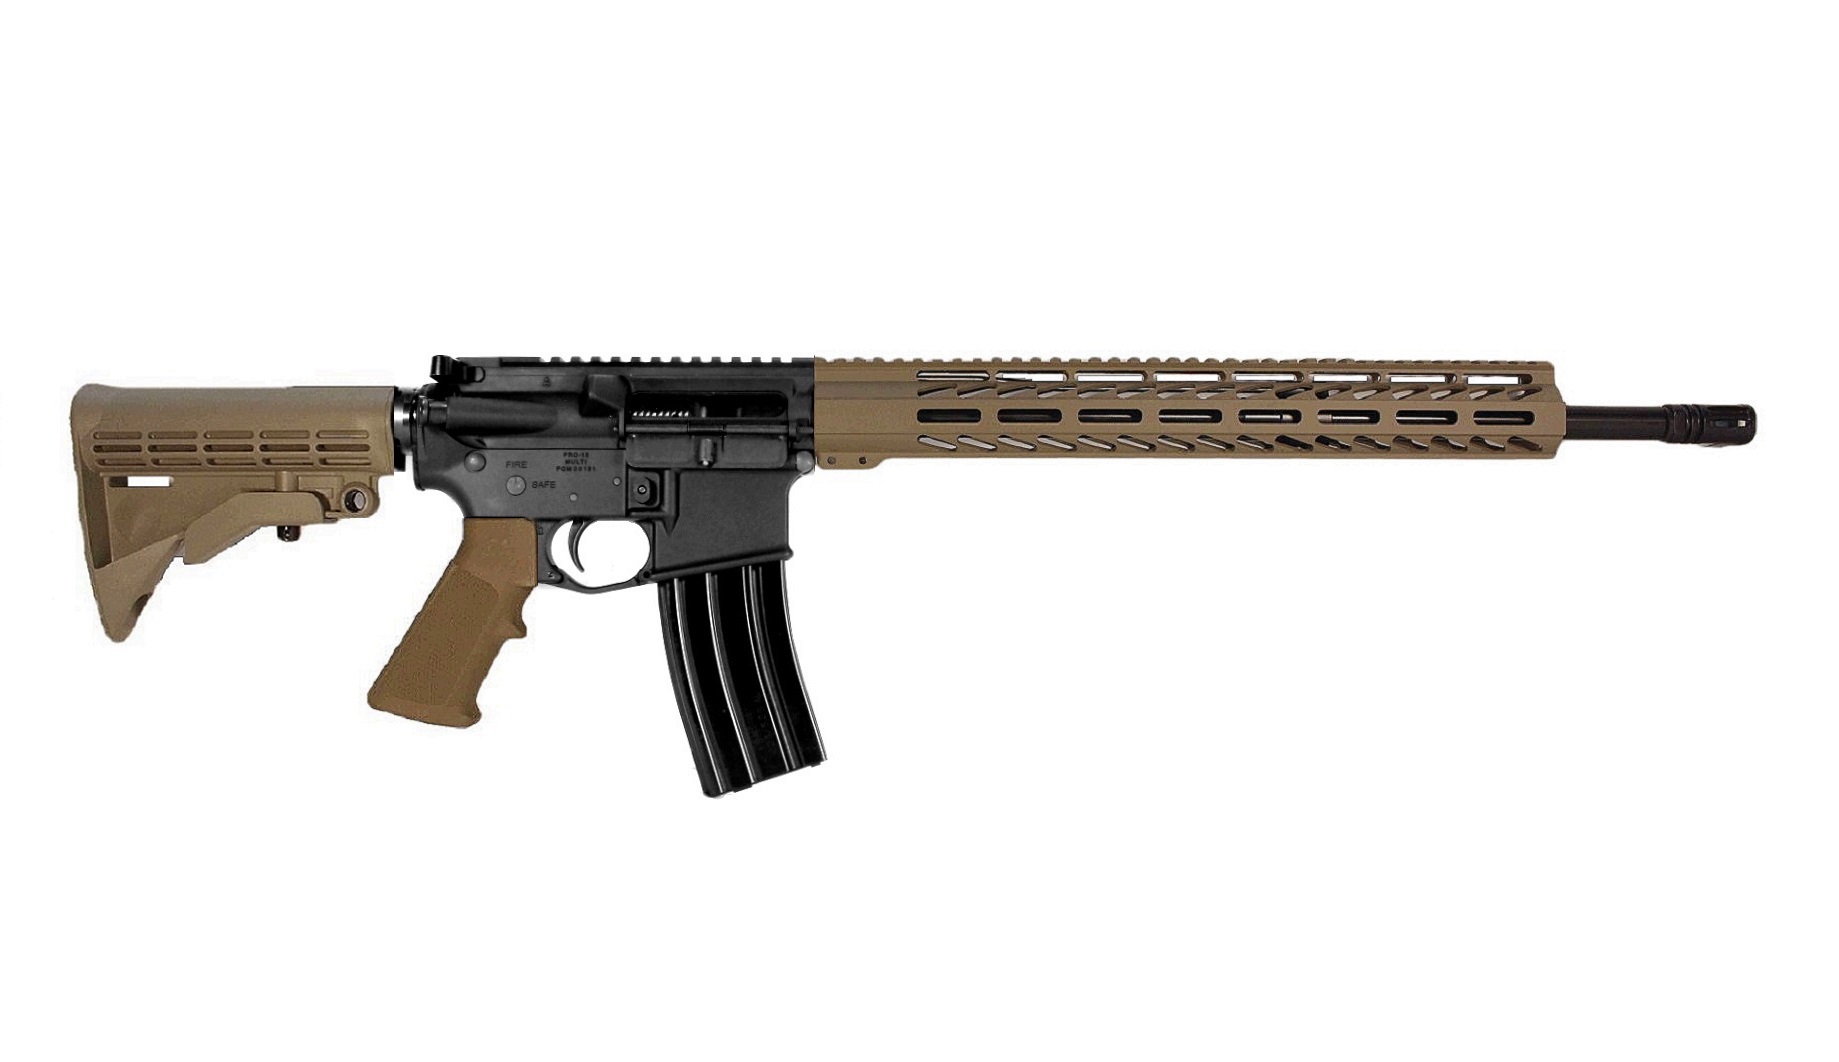 18 inch 6.8 SPC II AR15 Rifle in BLK/FDE